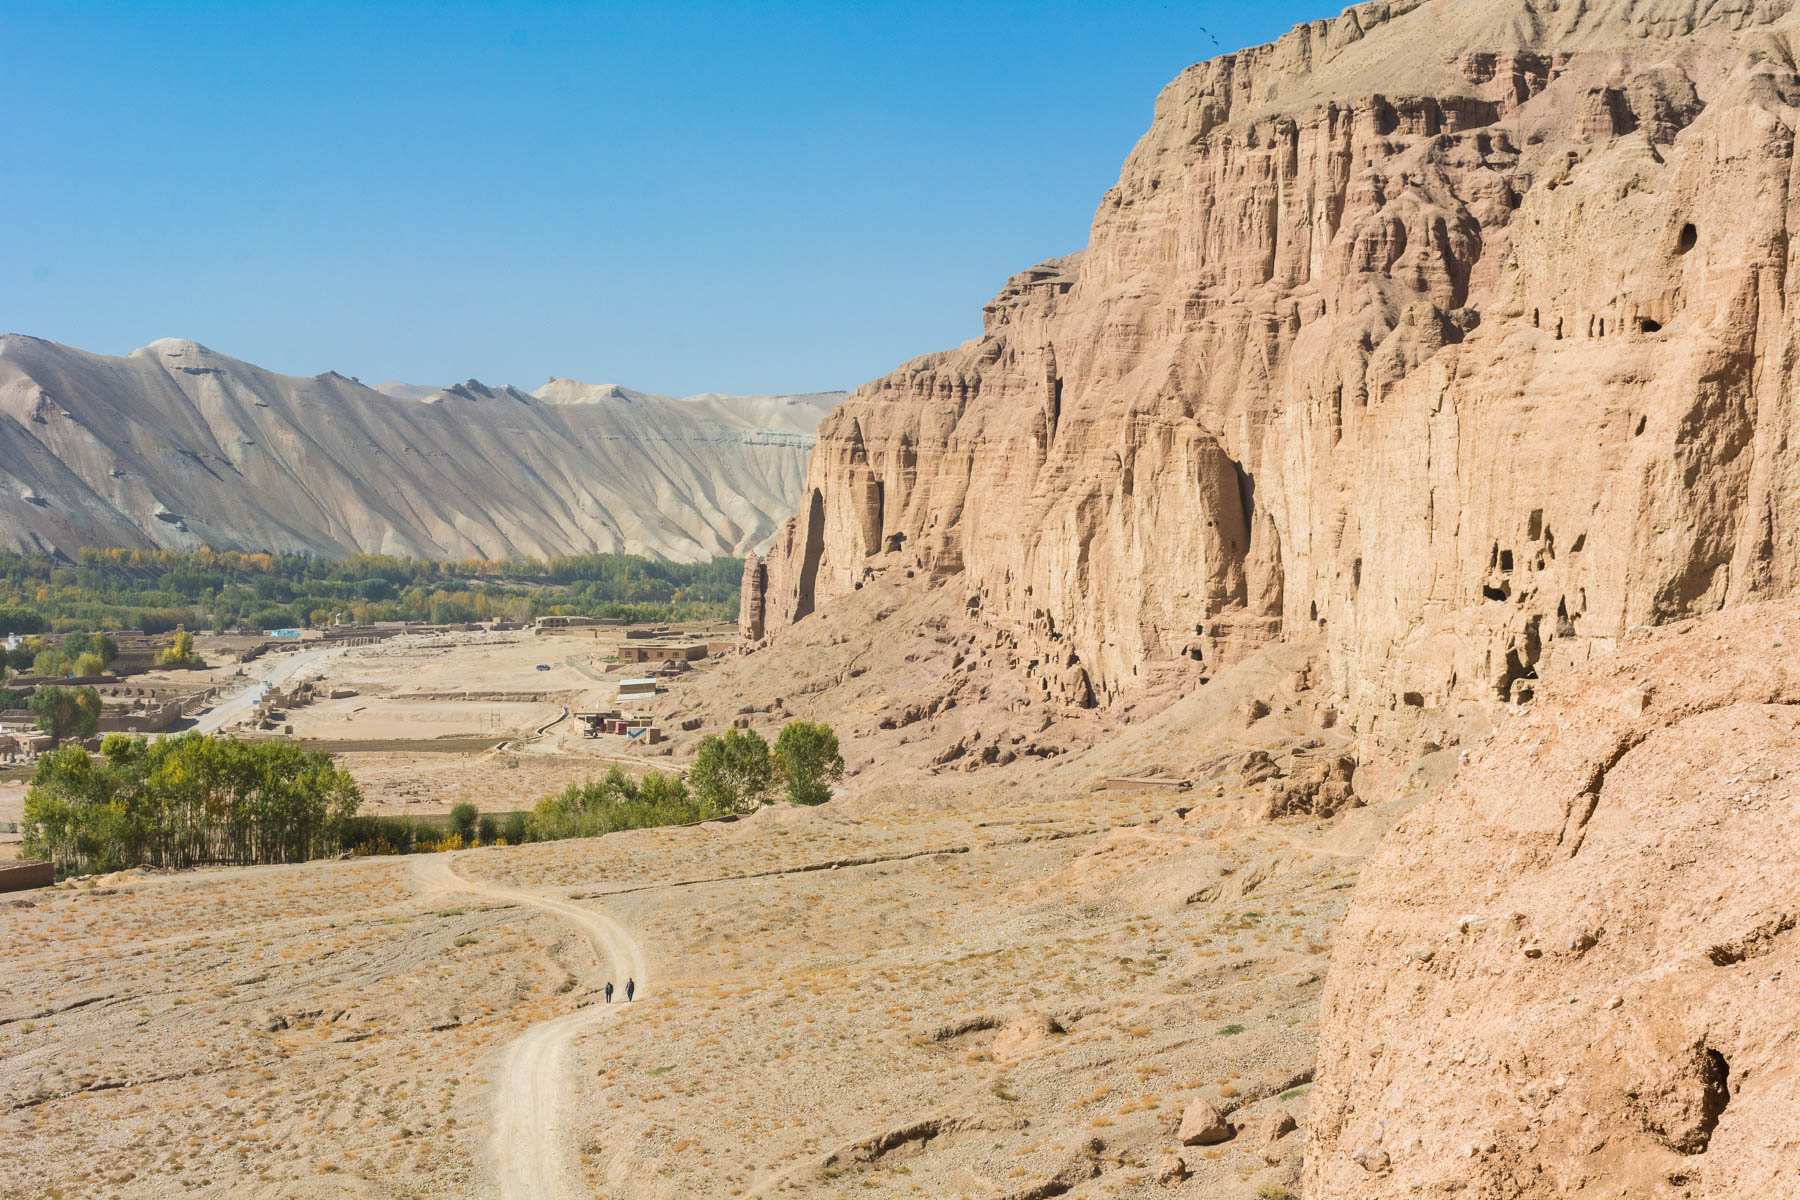 The buddhas of Bamiyan, Afghanistan